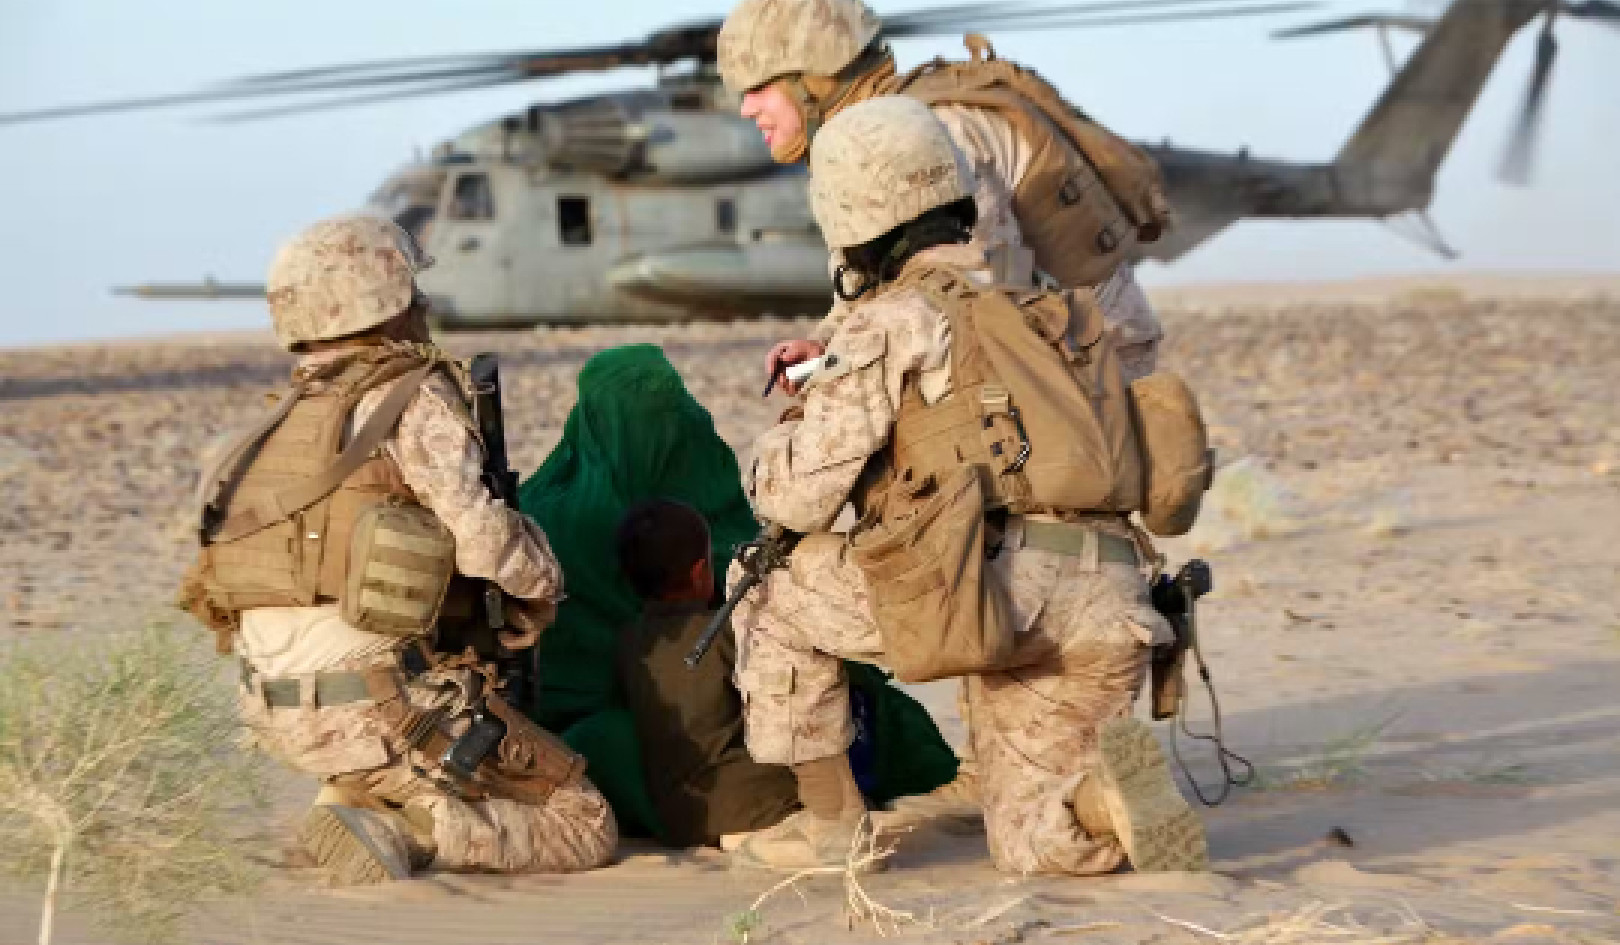 داستان داخلی نحوه فرستادن سربازان زن توسط ارتش آمریکا به ماموریت های جنگی مخفیانه به افغانستان